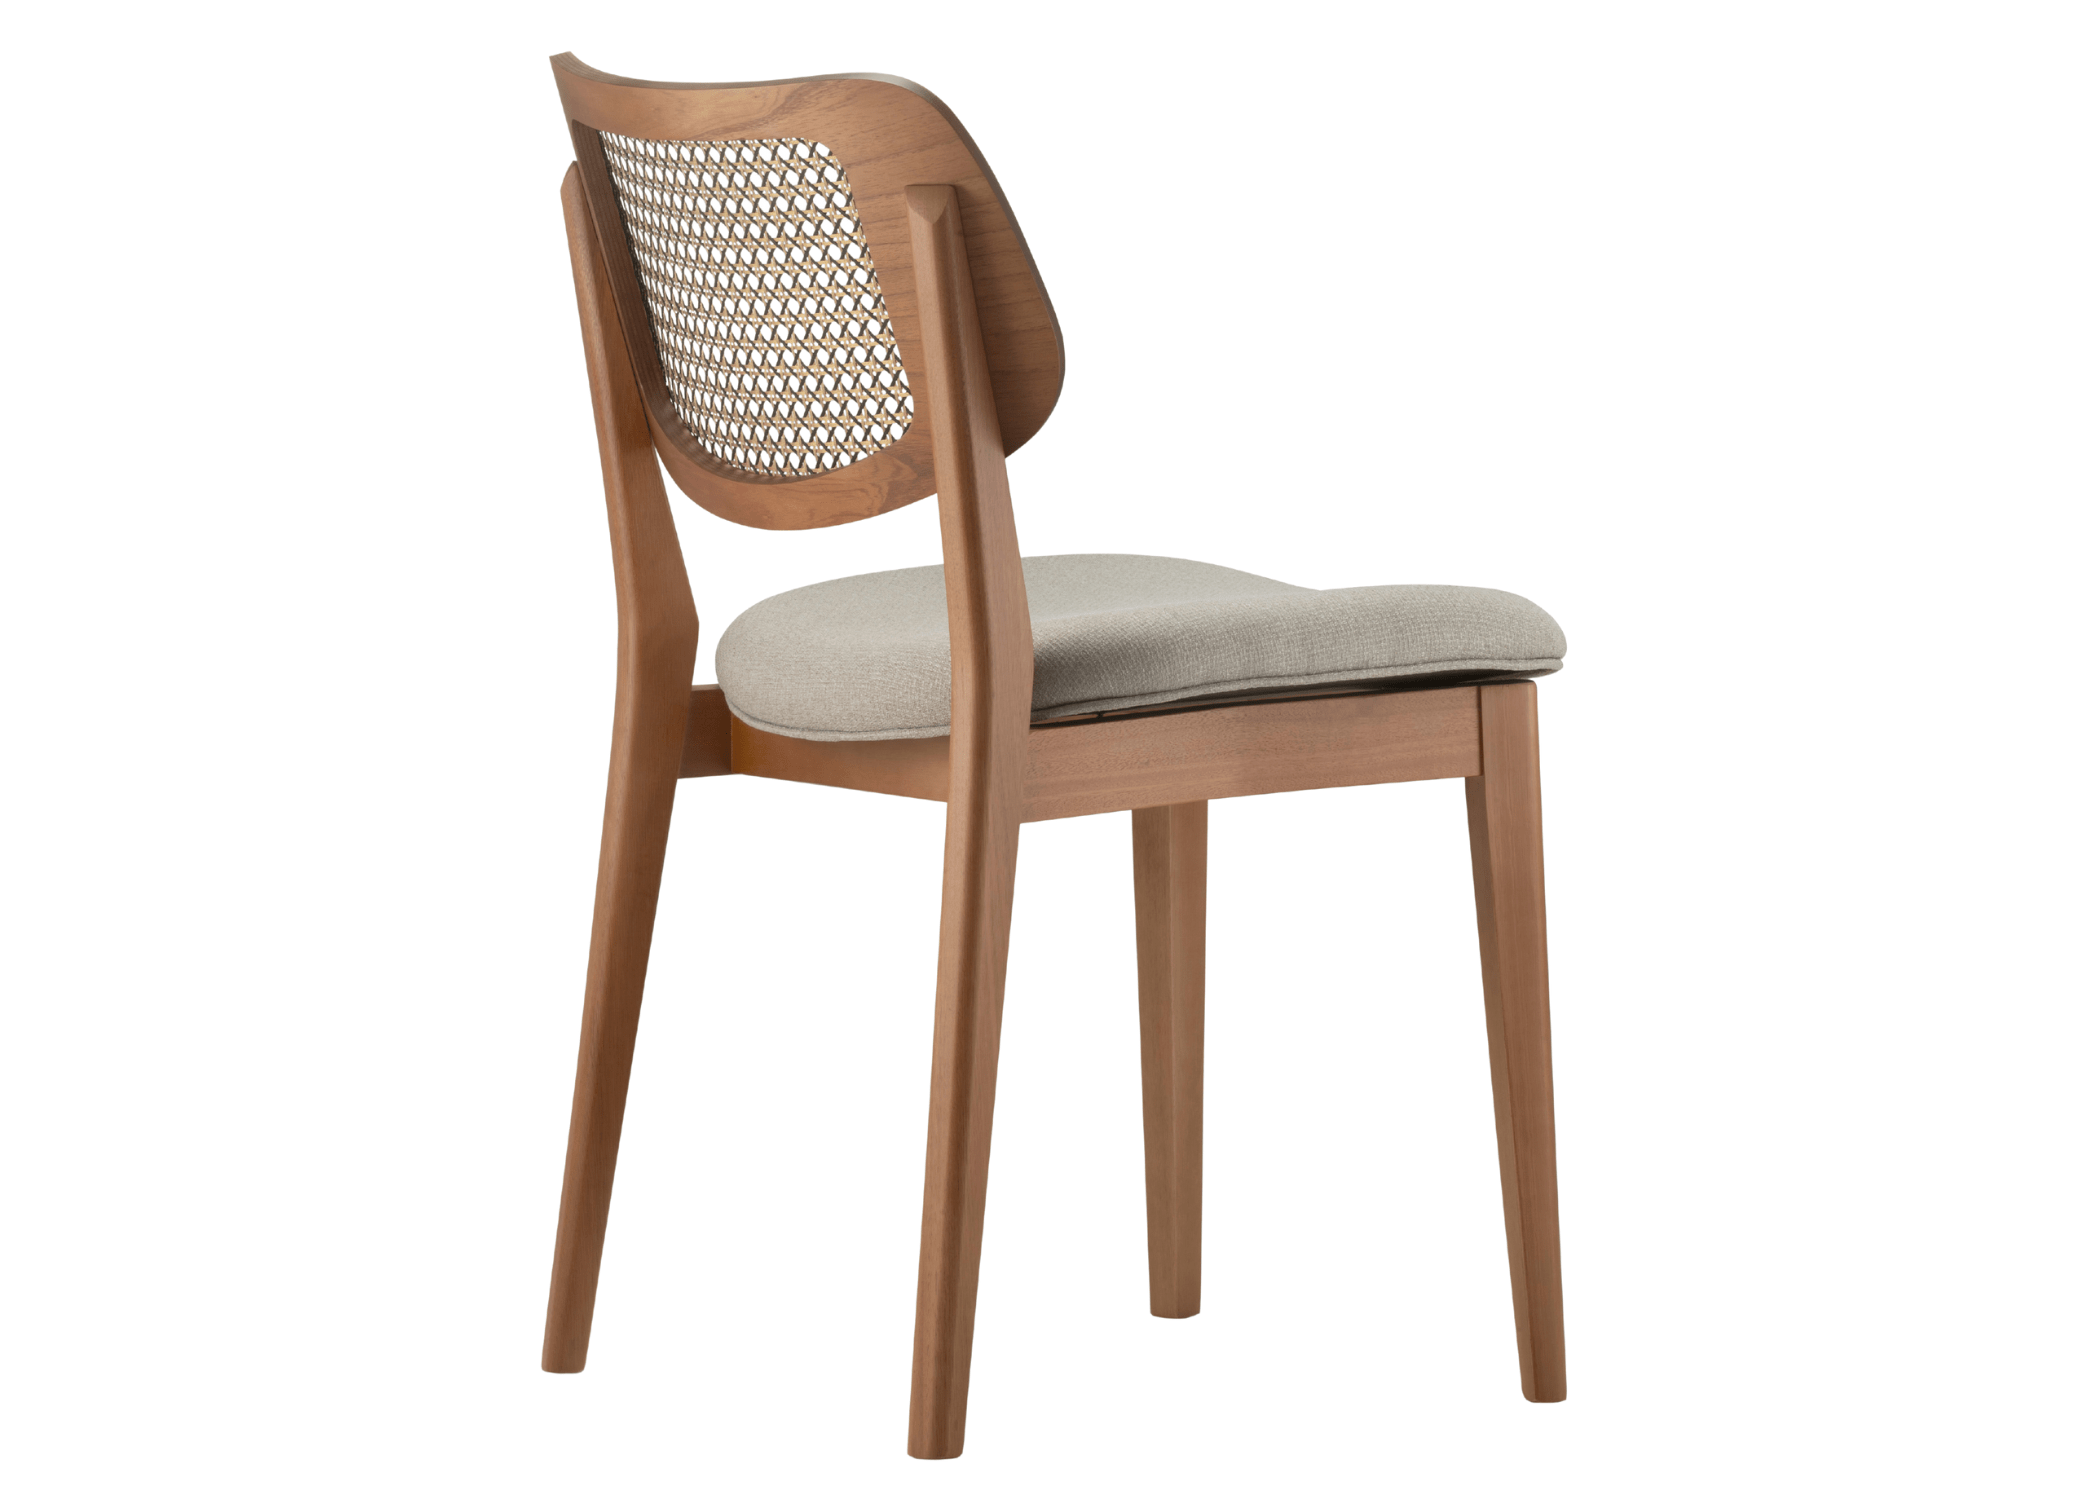 Conforto e estilo: assento da Cadeira Barry em um ambiente contemporâneo.